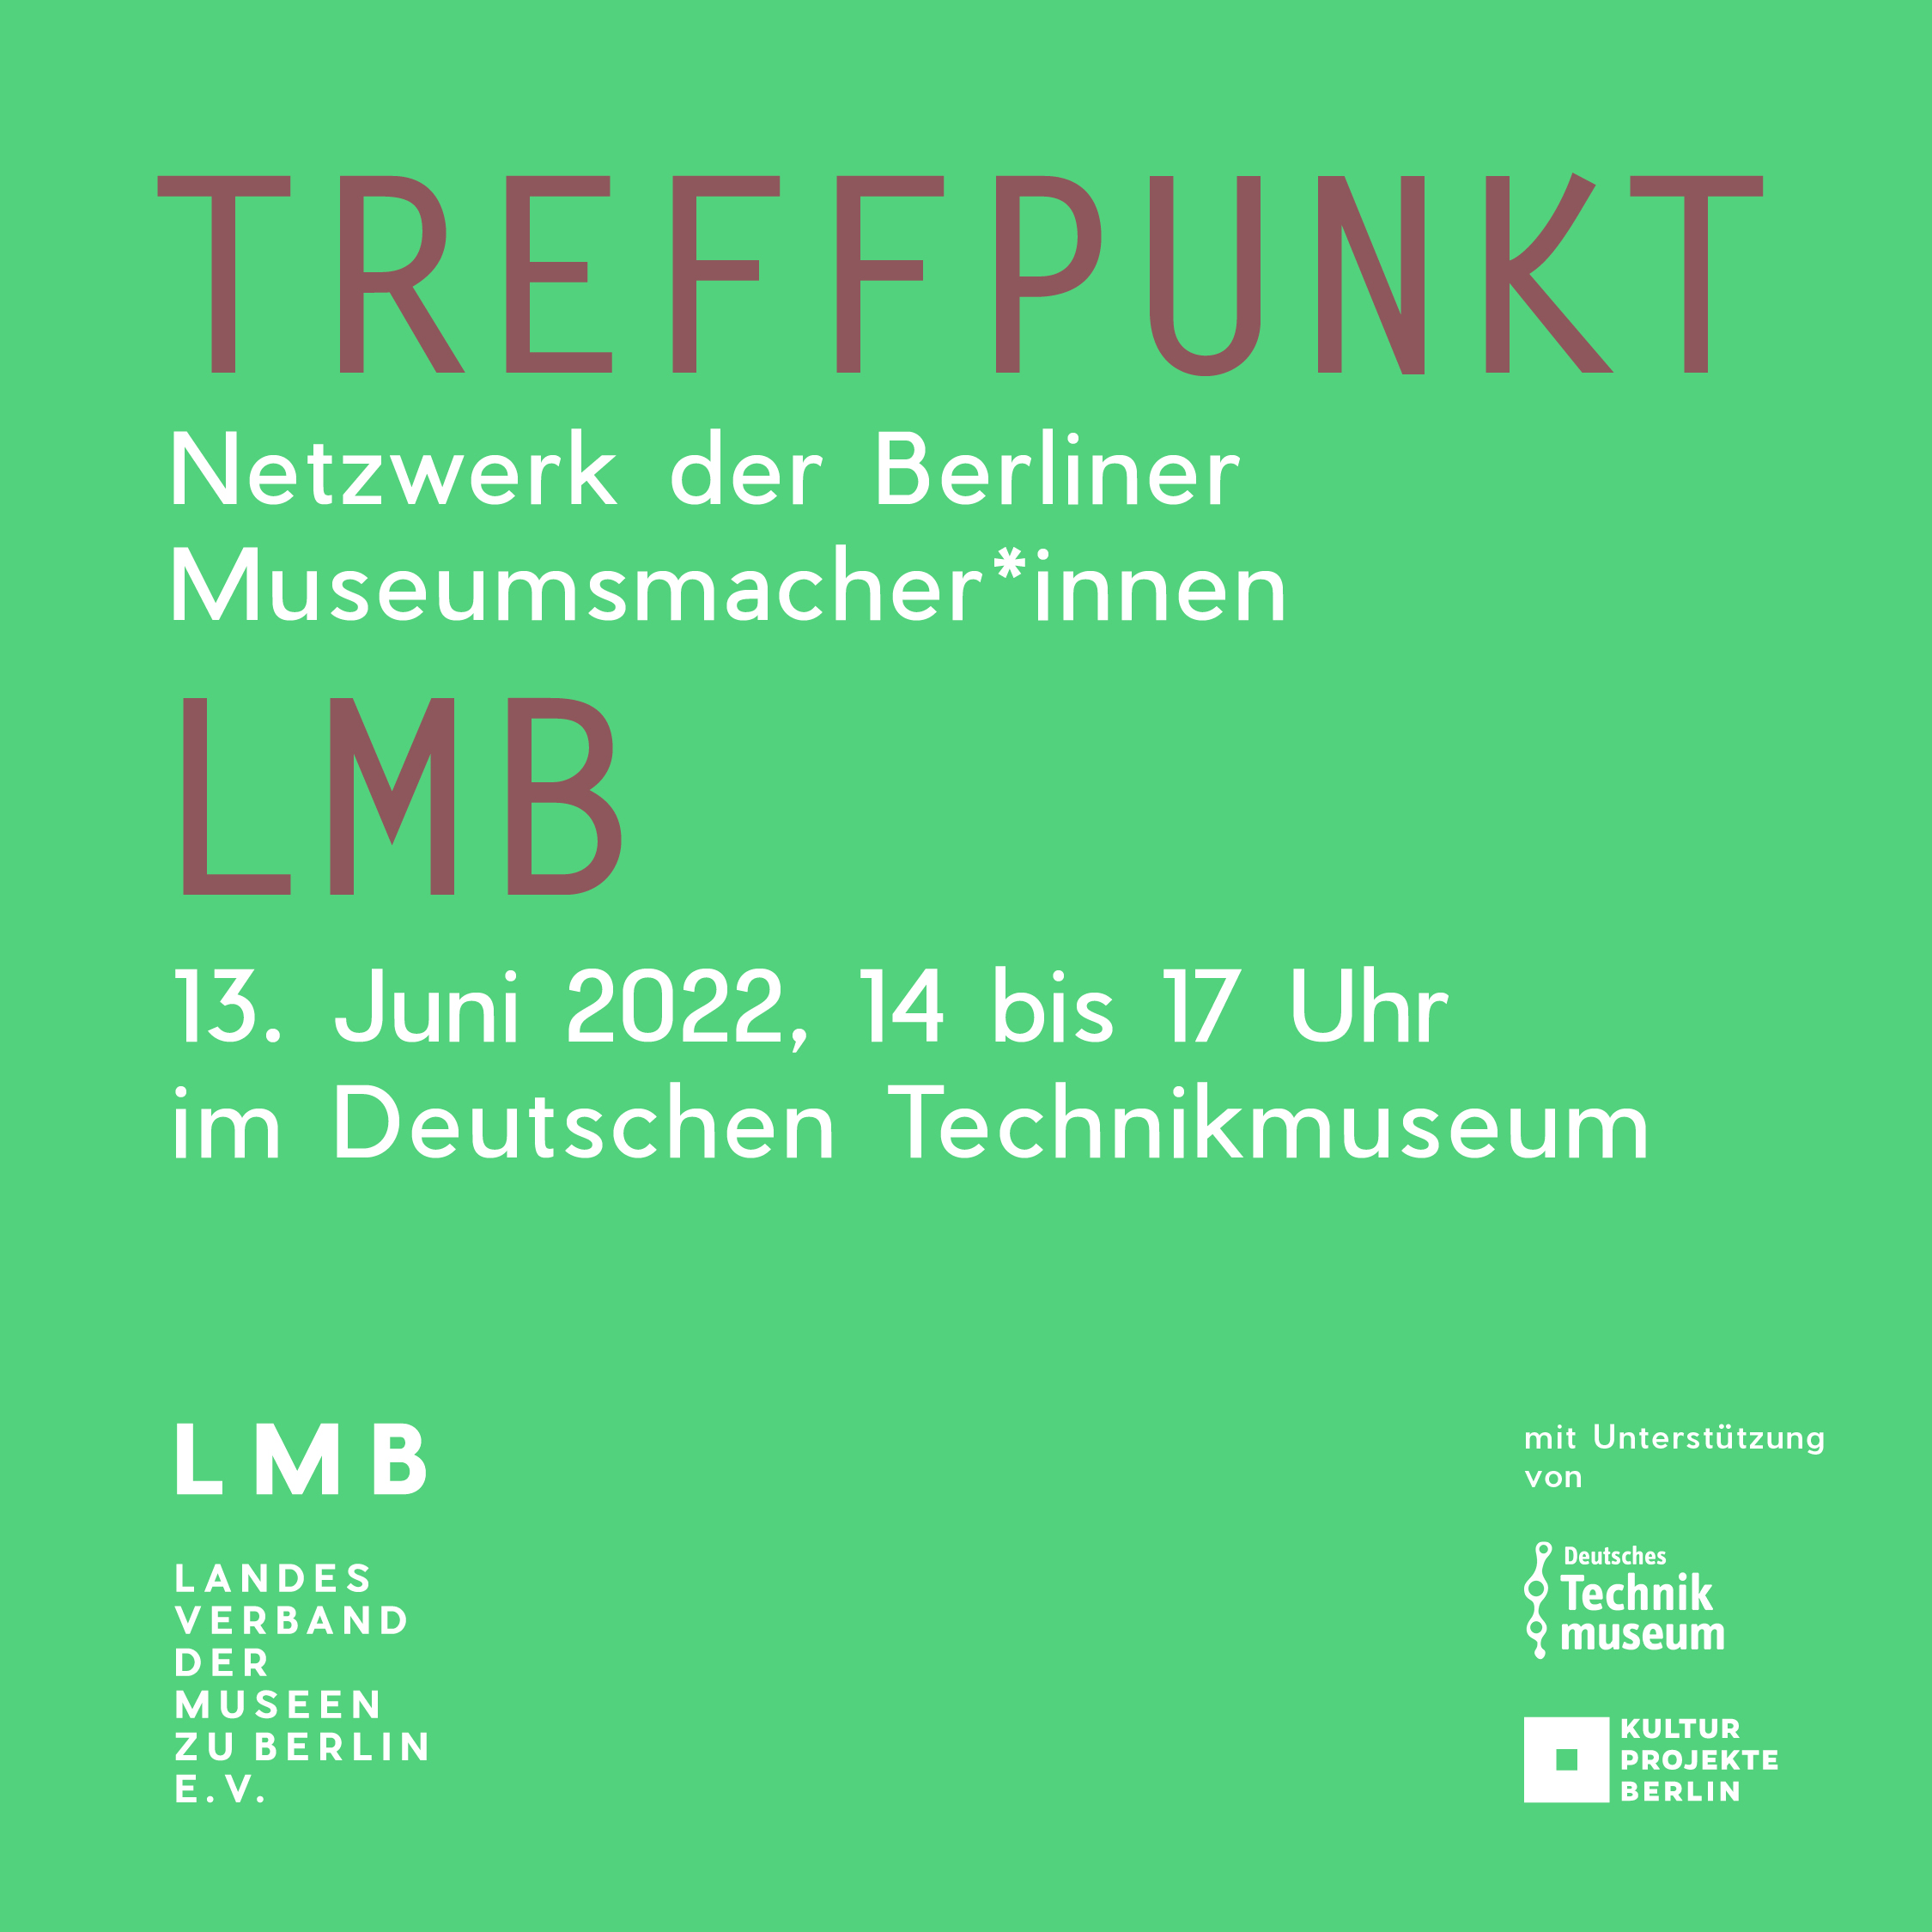 Treffpunkt LMB, 13. Juni 2022, 14 bis 17 Uhr, eine Veranstaltung des Landesverbandes der Museen zu Berlin mit UNterstützung der Kulturprojekte Berlin und des Deutschen Technikmuseums